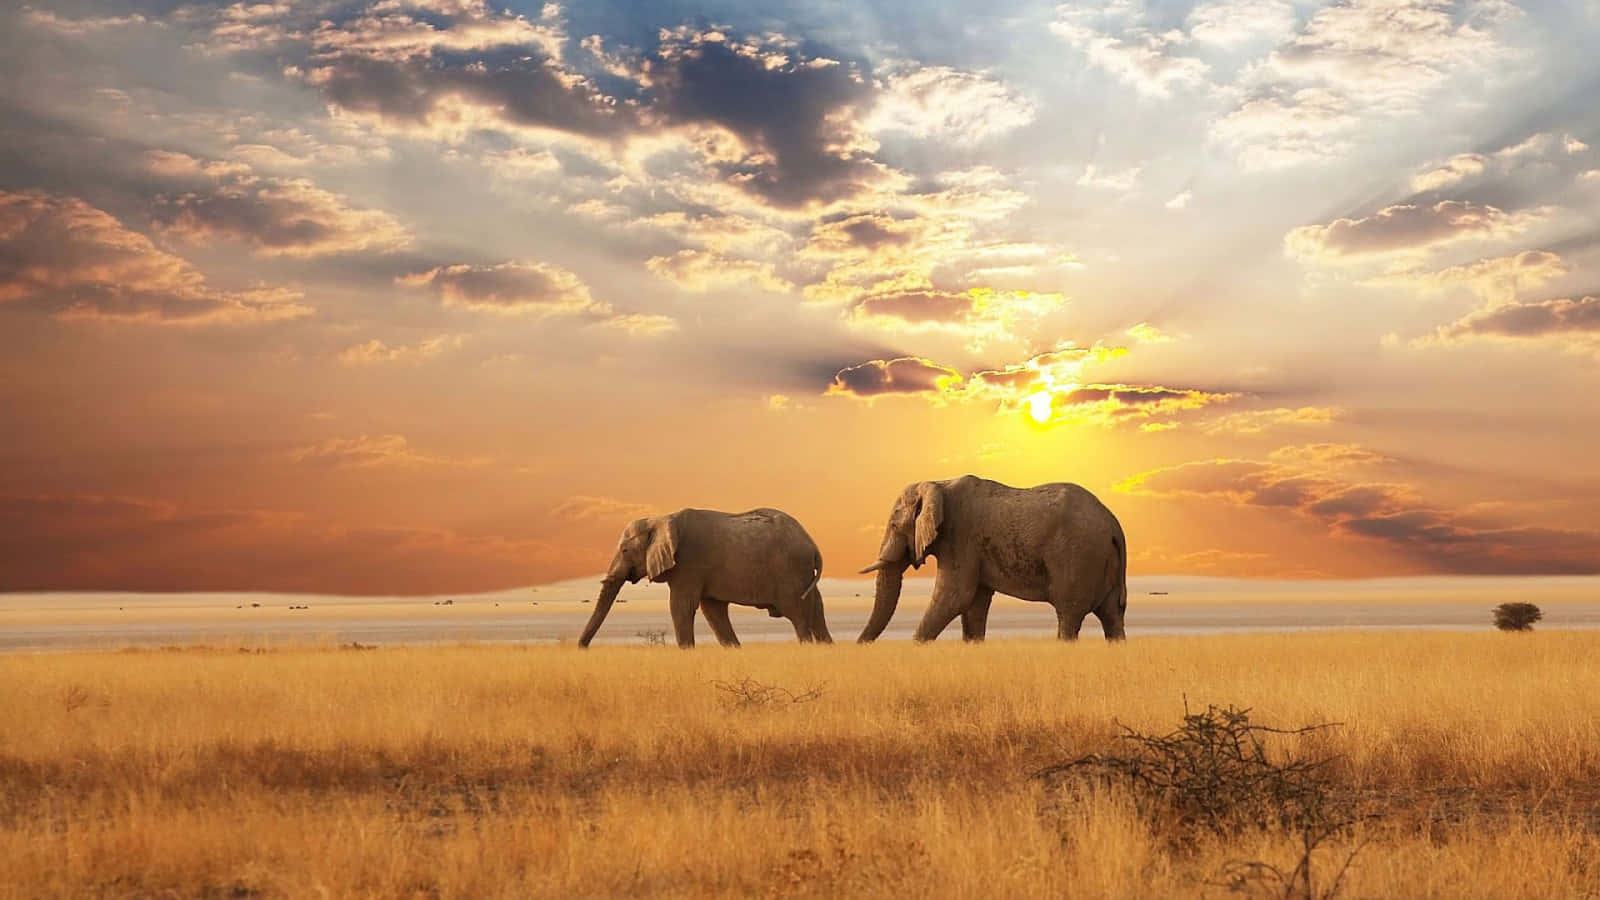 two elephants walking in the grass